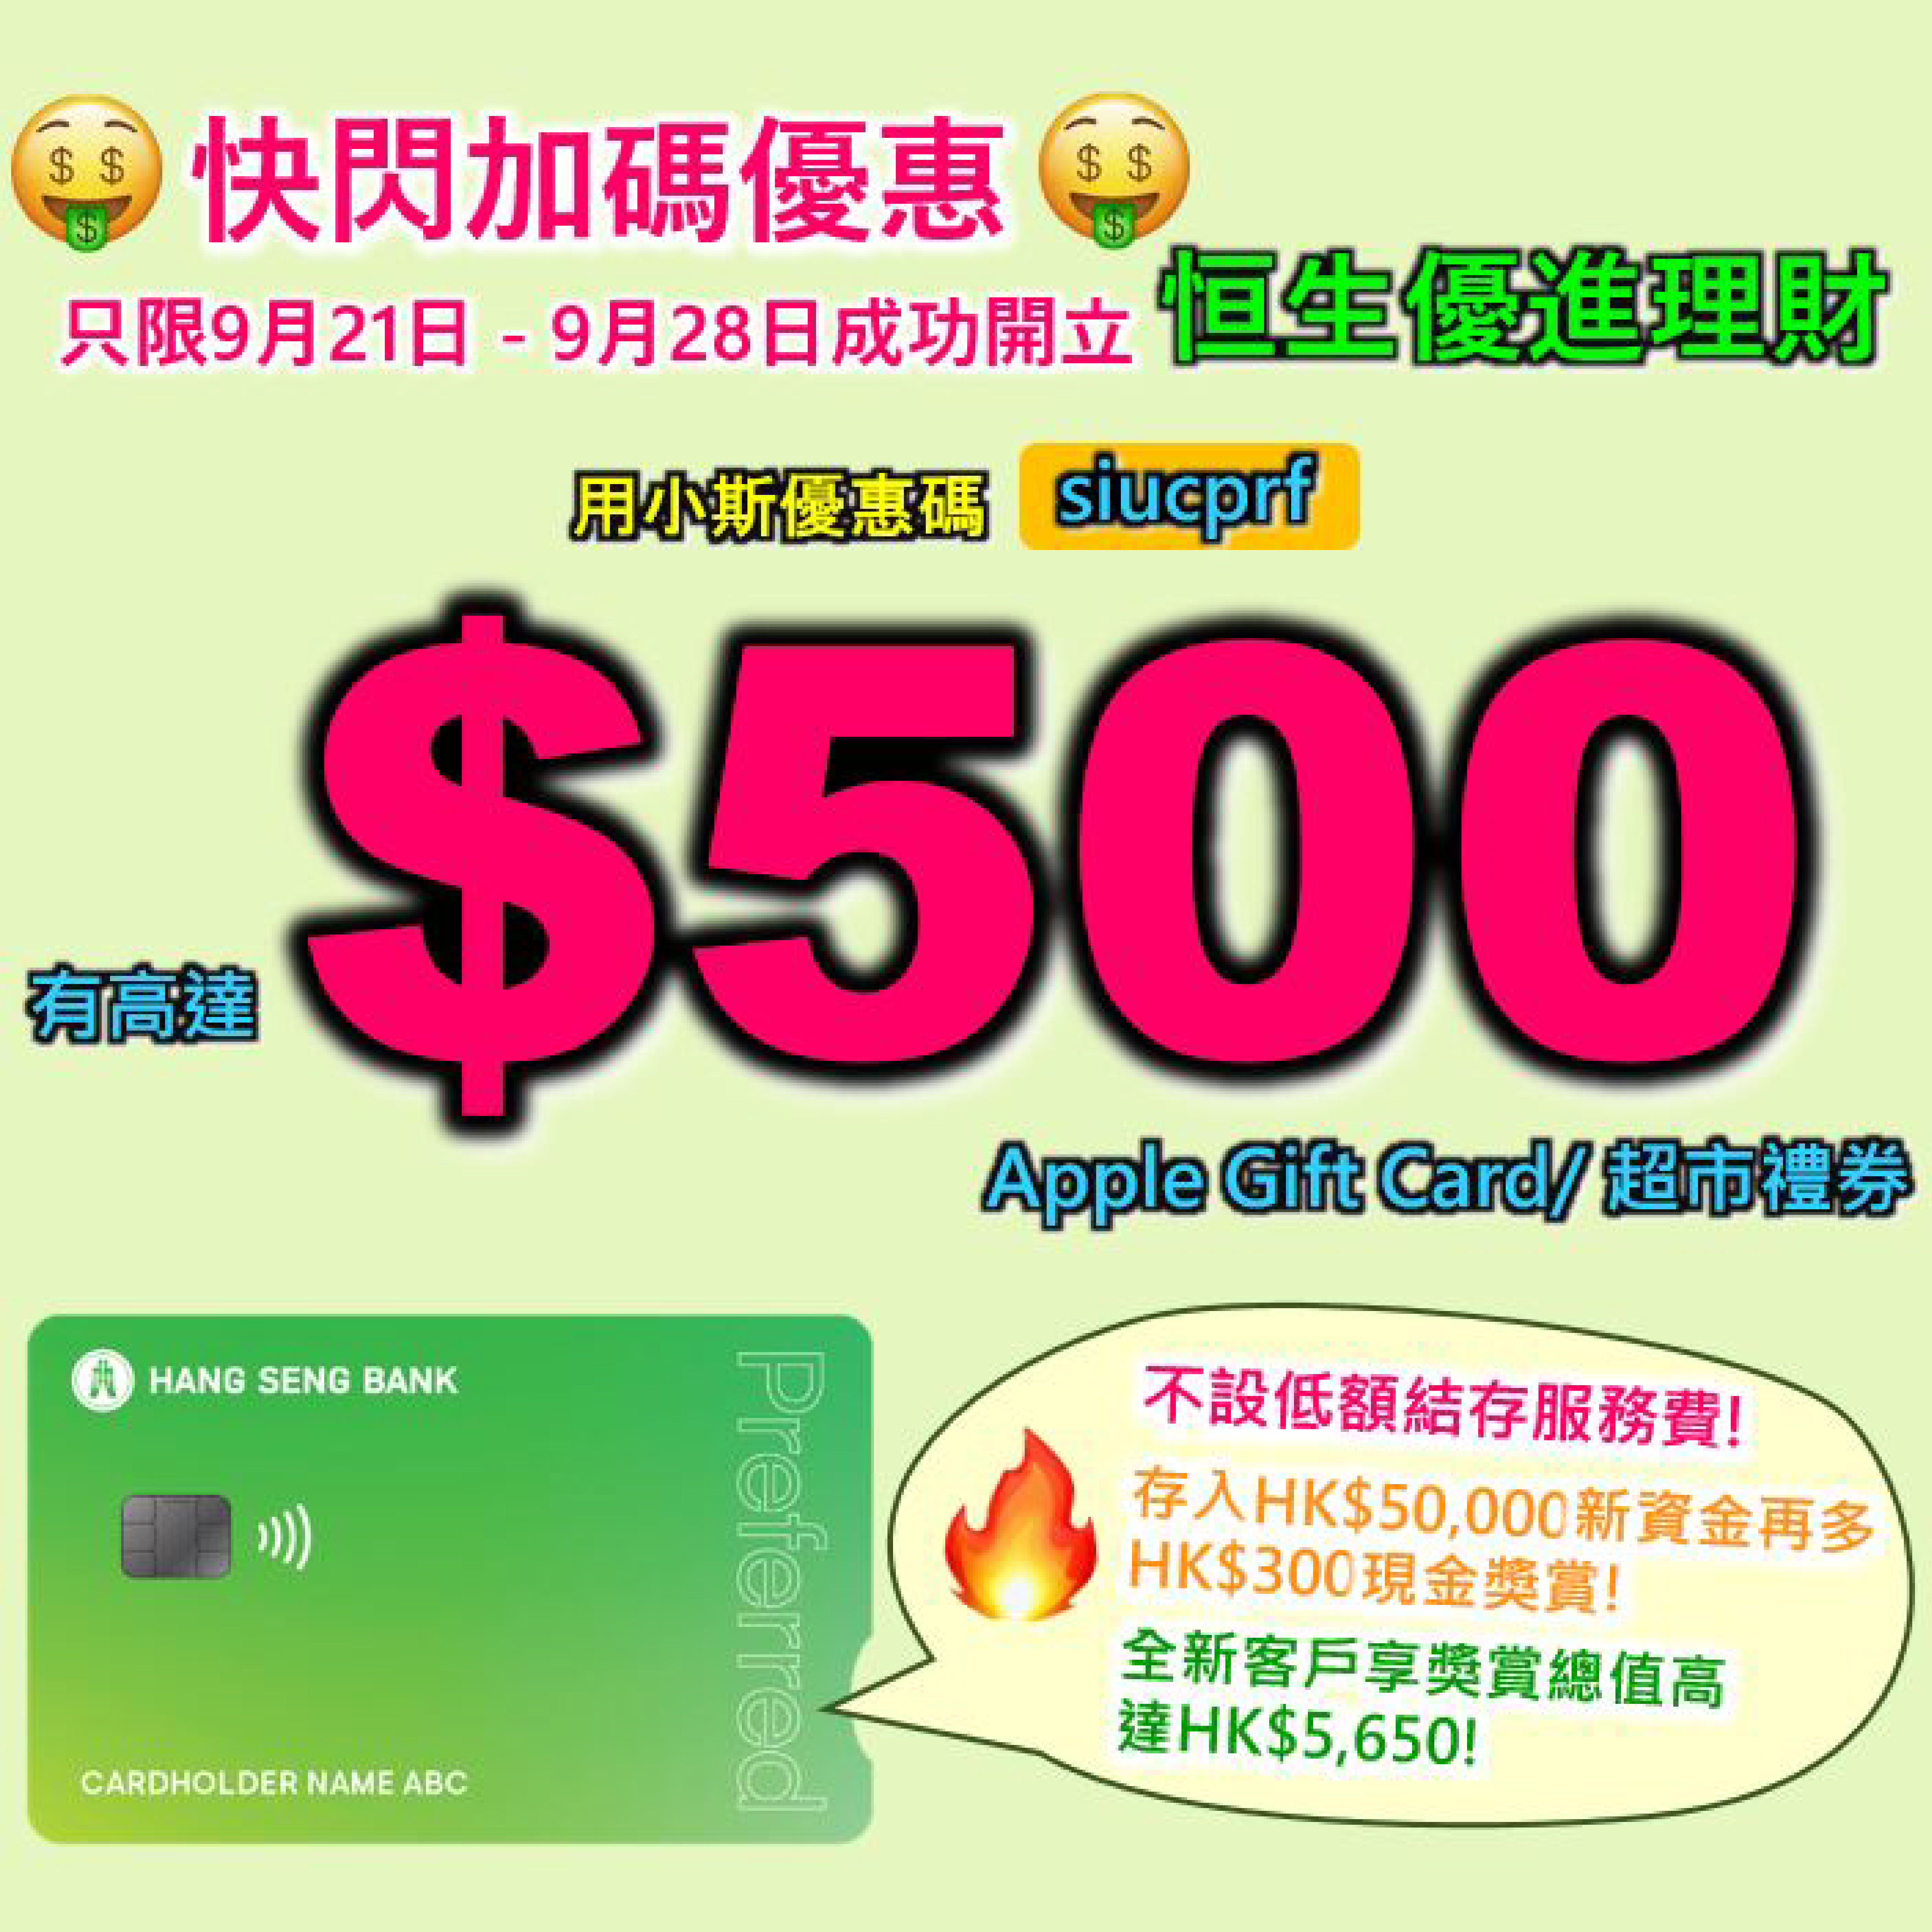 【🔥🔥恒生開戶快閃加碼優惠❗🔥🔥】用小斯優惠碼「siucprf」申請恒生Preferred優進理財，簡單完成幾步就有高達HK$500 Apple Gift Card/超市禮券❗ 存入HK$50,000 新資金再多HK$ 300 現金獎賞 ❗